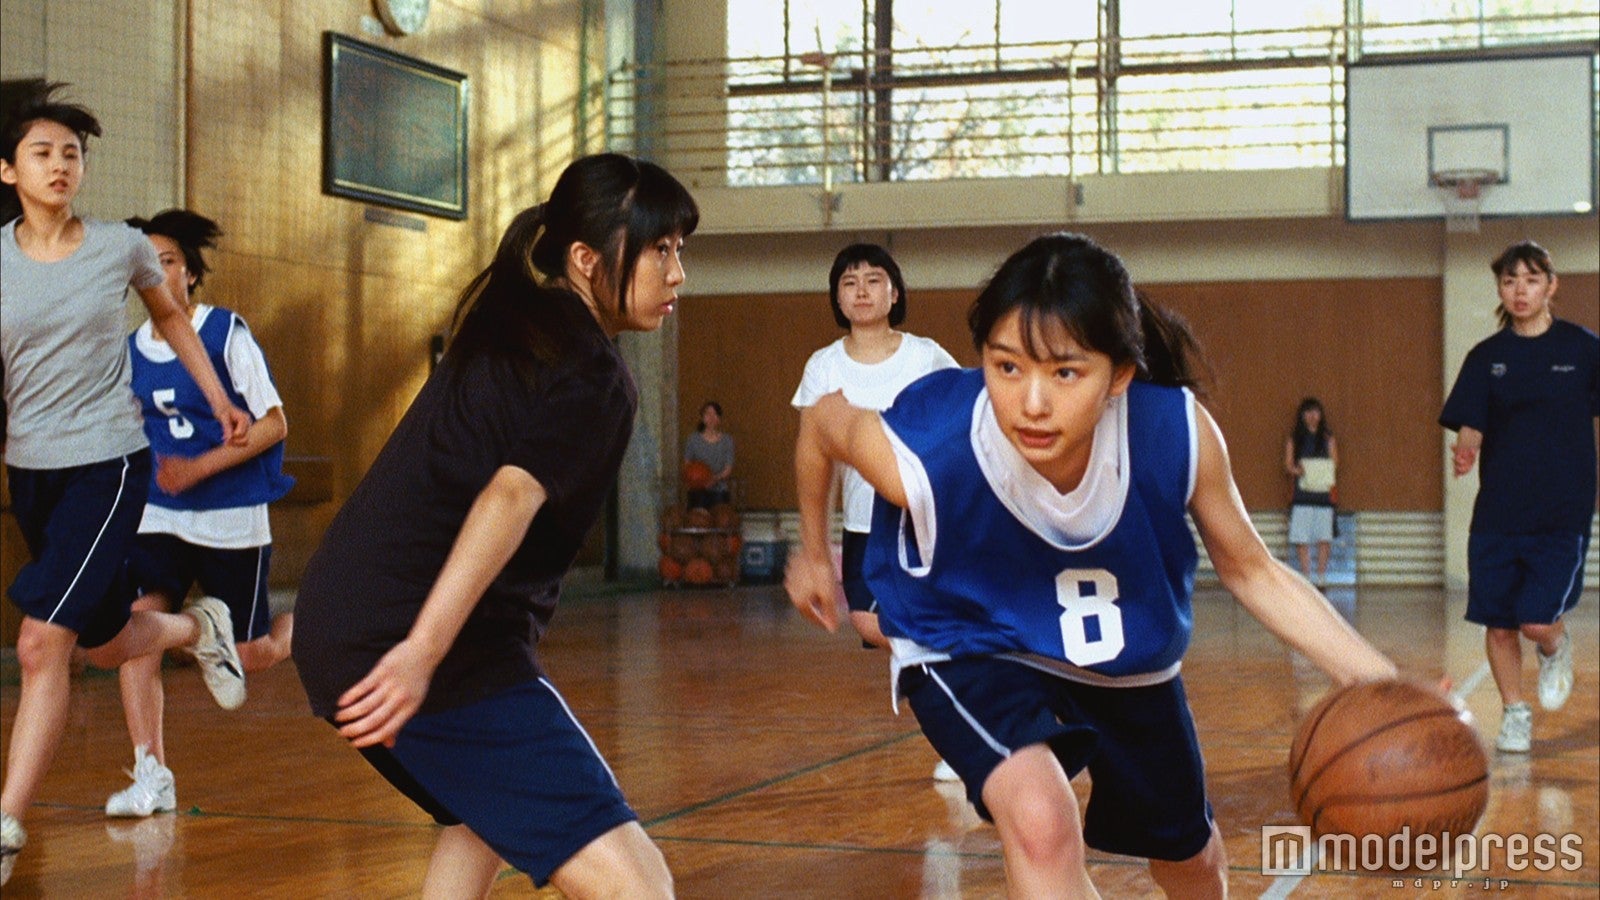 画像1 8 岡山の奇跡 桜井日奈子 バスケットボールの見事な腕前を披露 モデルプレス